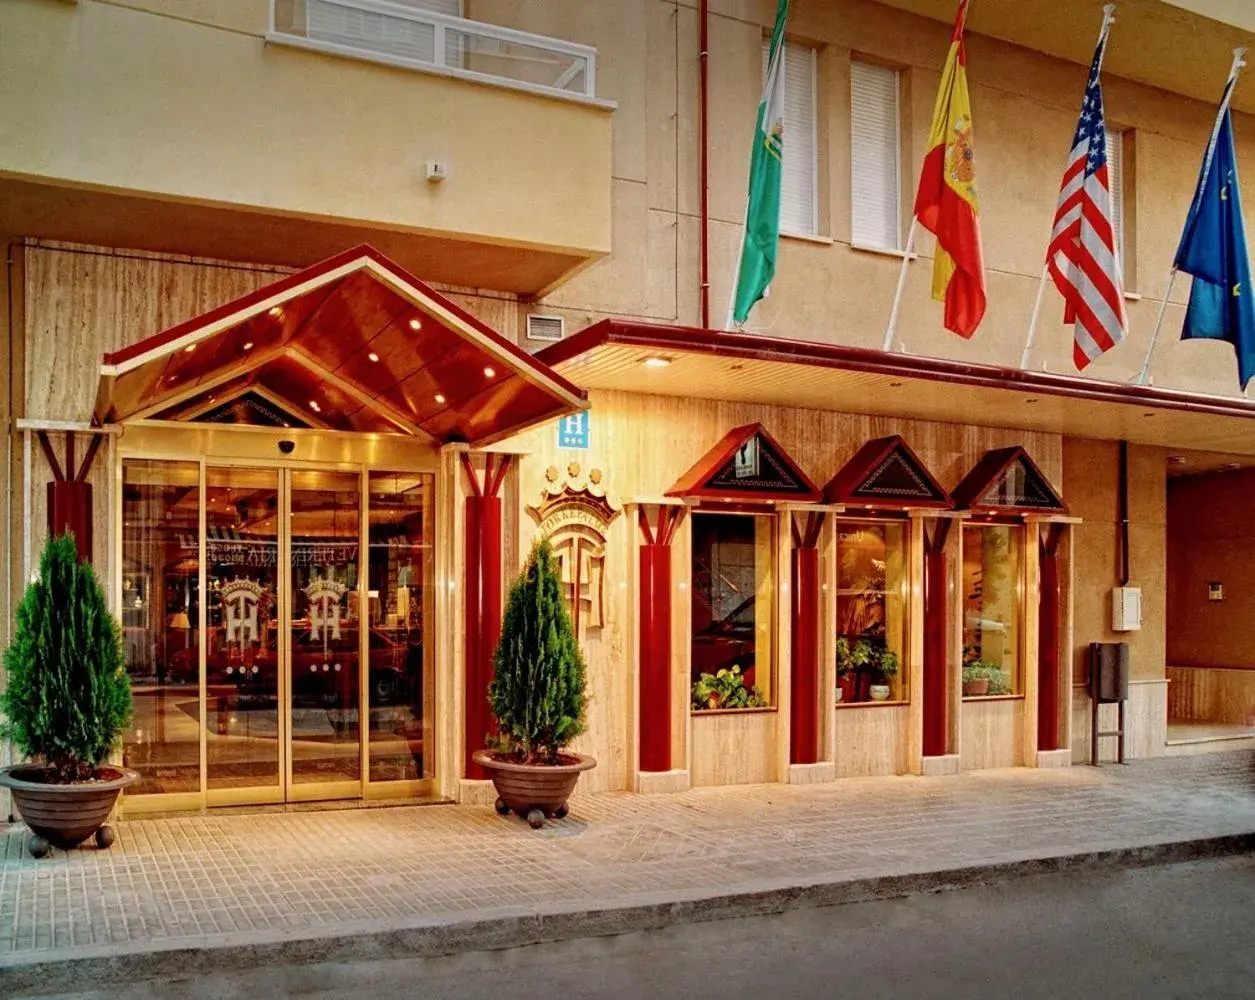 Lobby or reception in Hotel Torrepalma